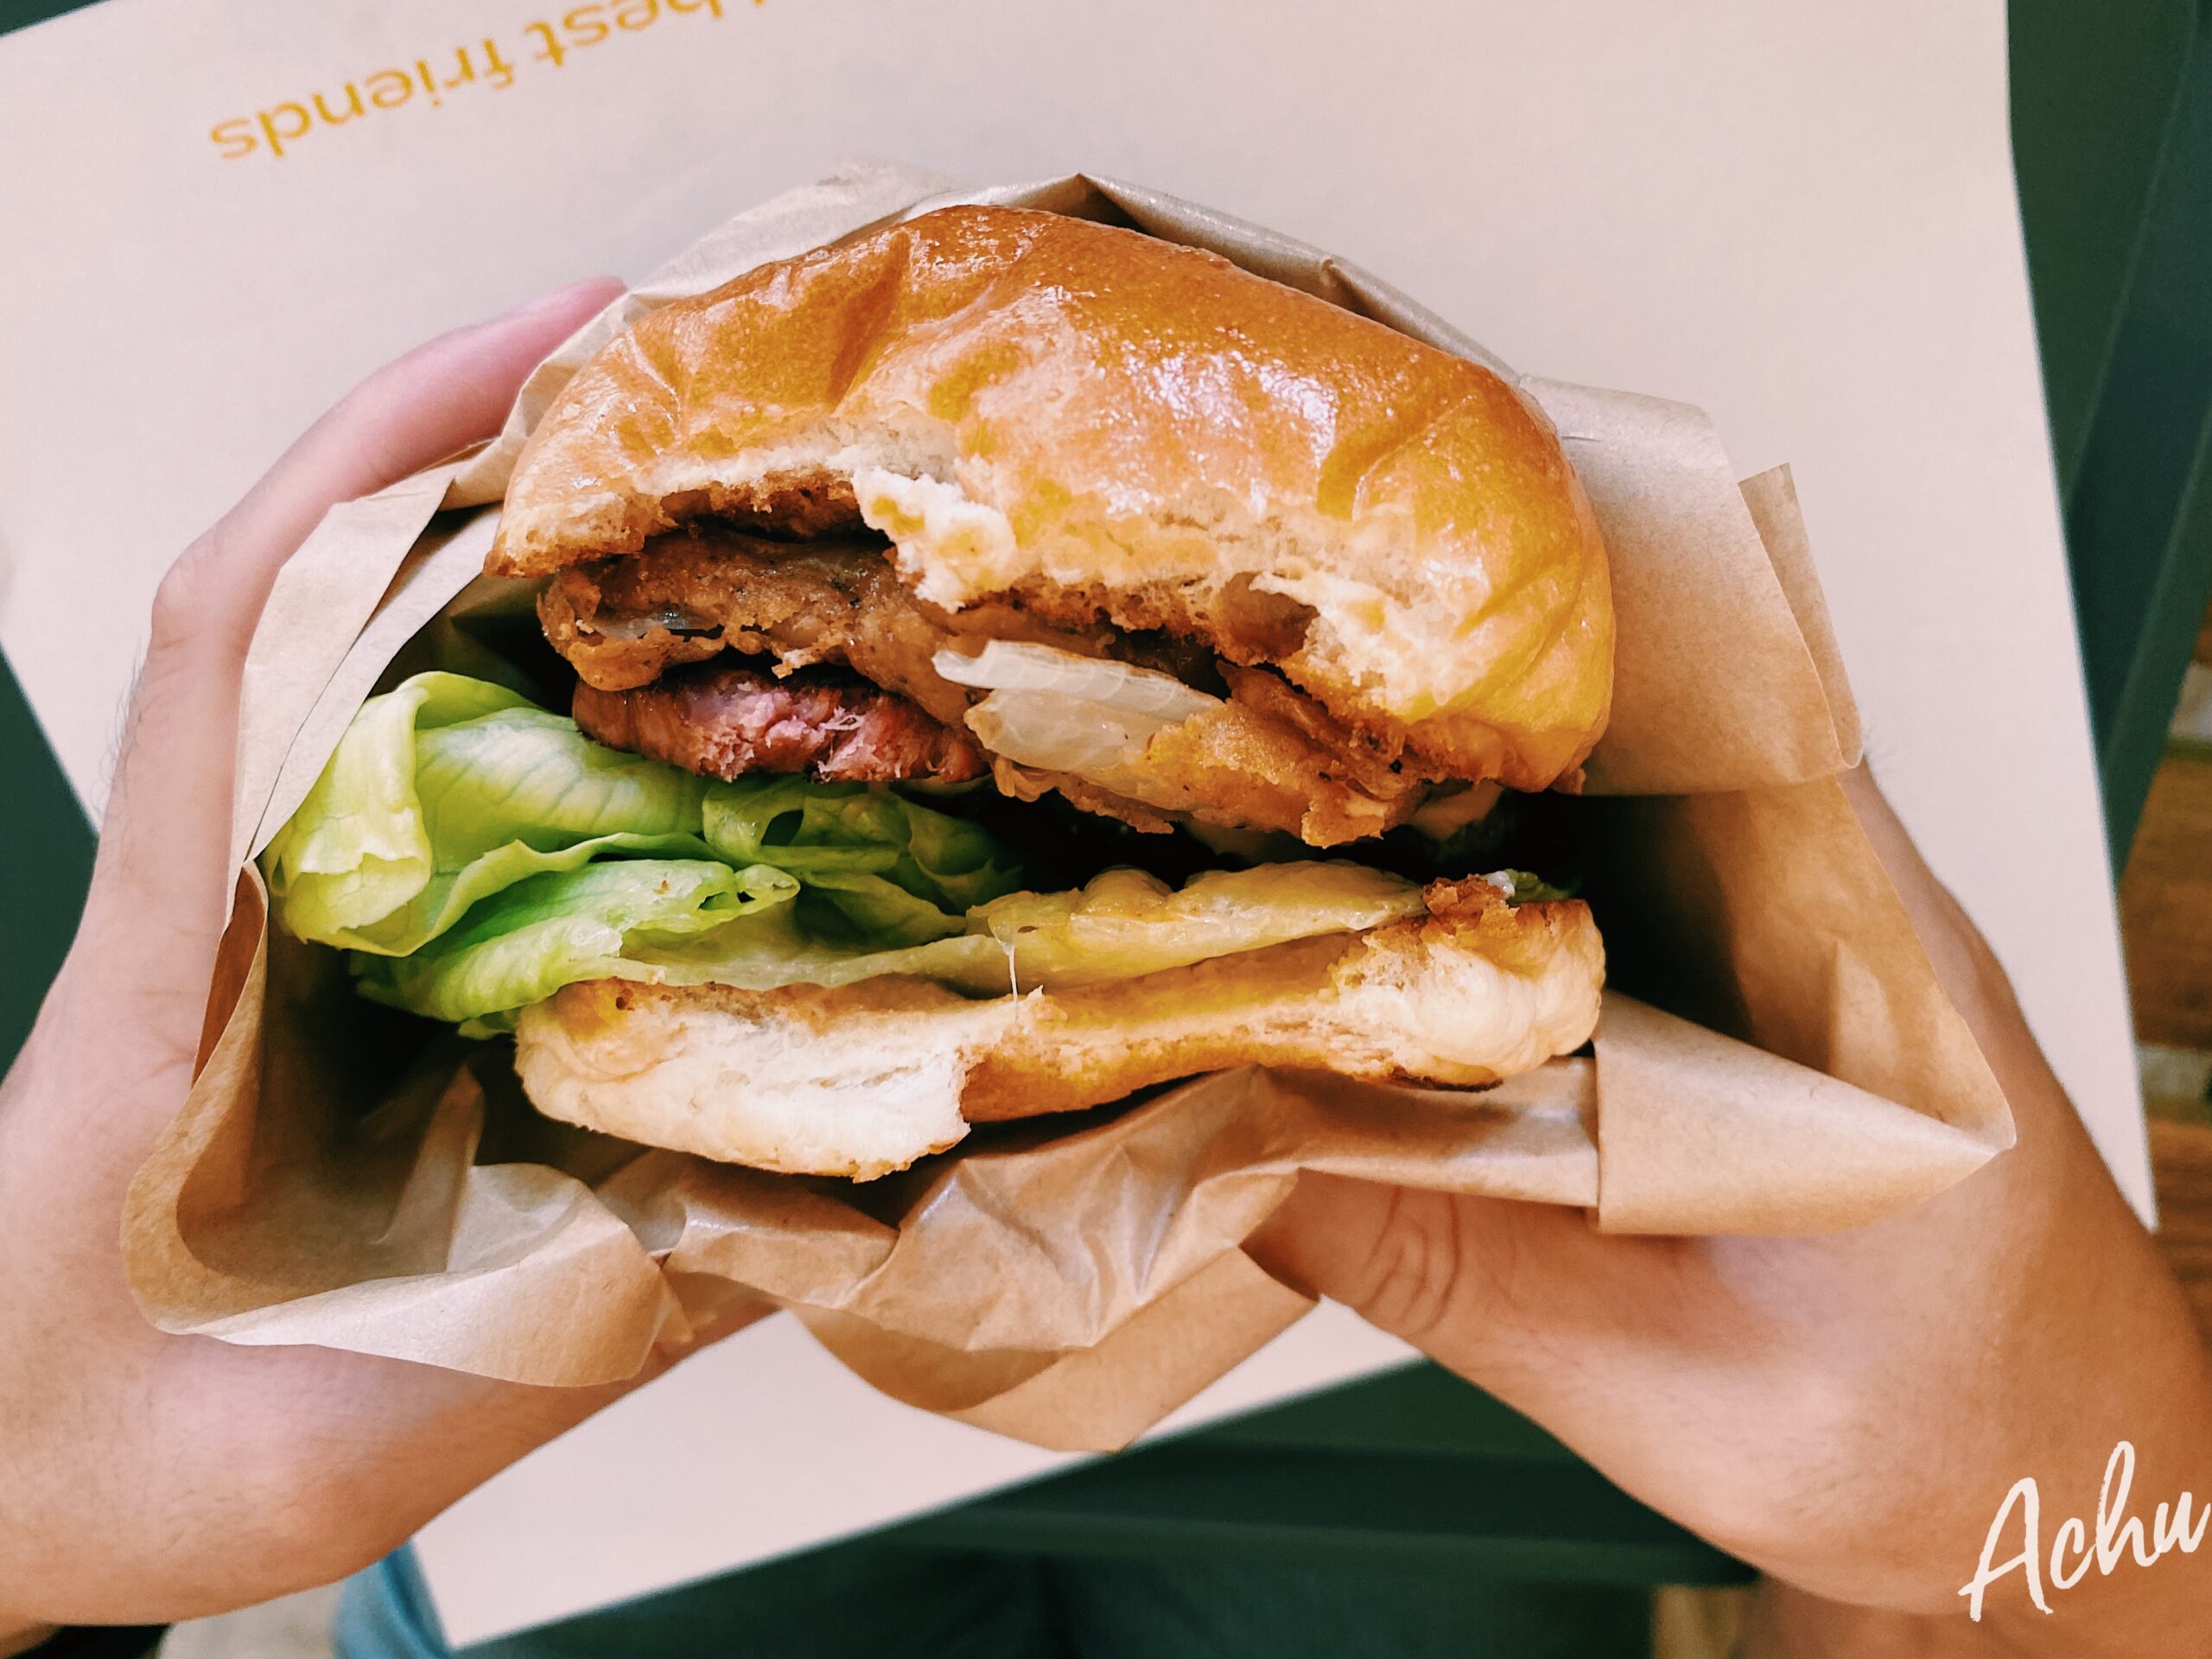 【內湖美食】Burger Behind The Door 手作美式漢堡 藏在門後般的驚喜美味 (菜單)